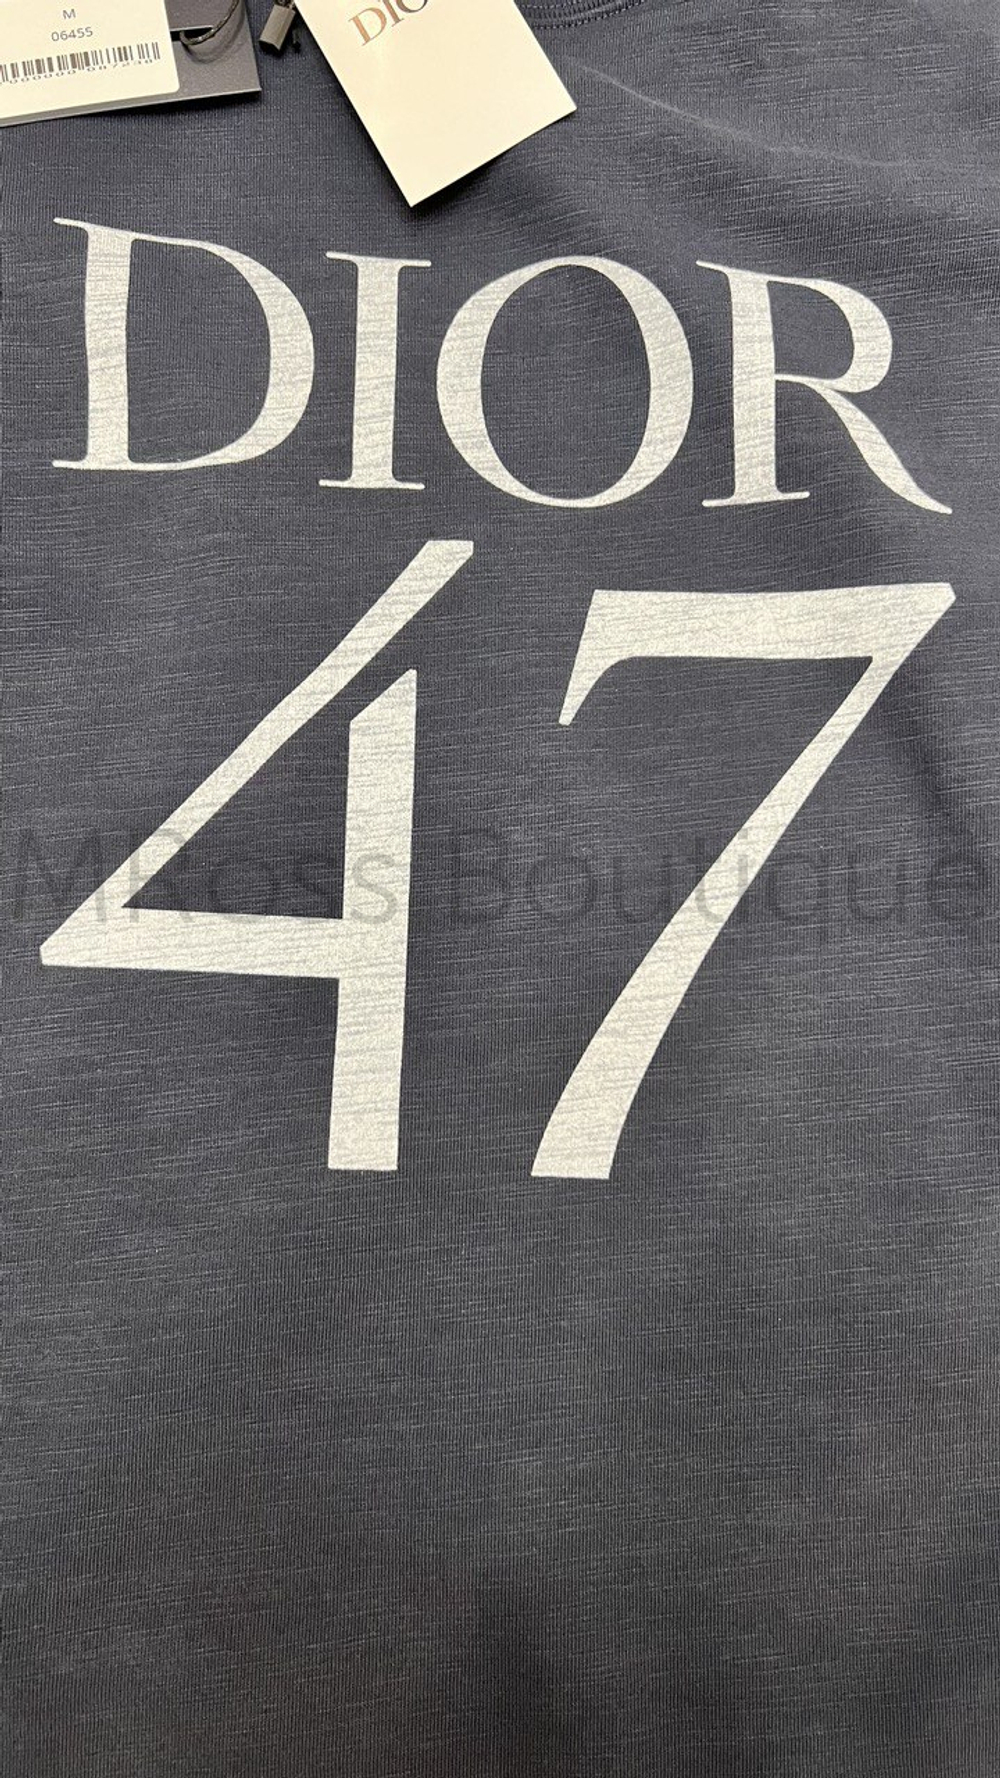 Синяя футболка Dior с принтом 47